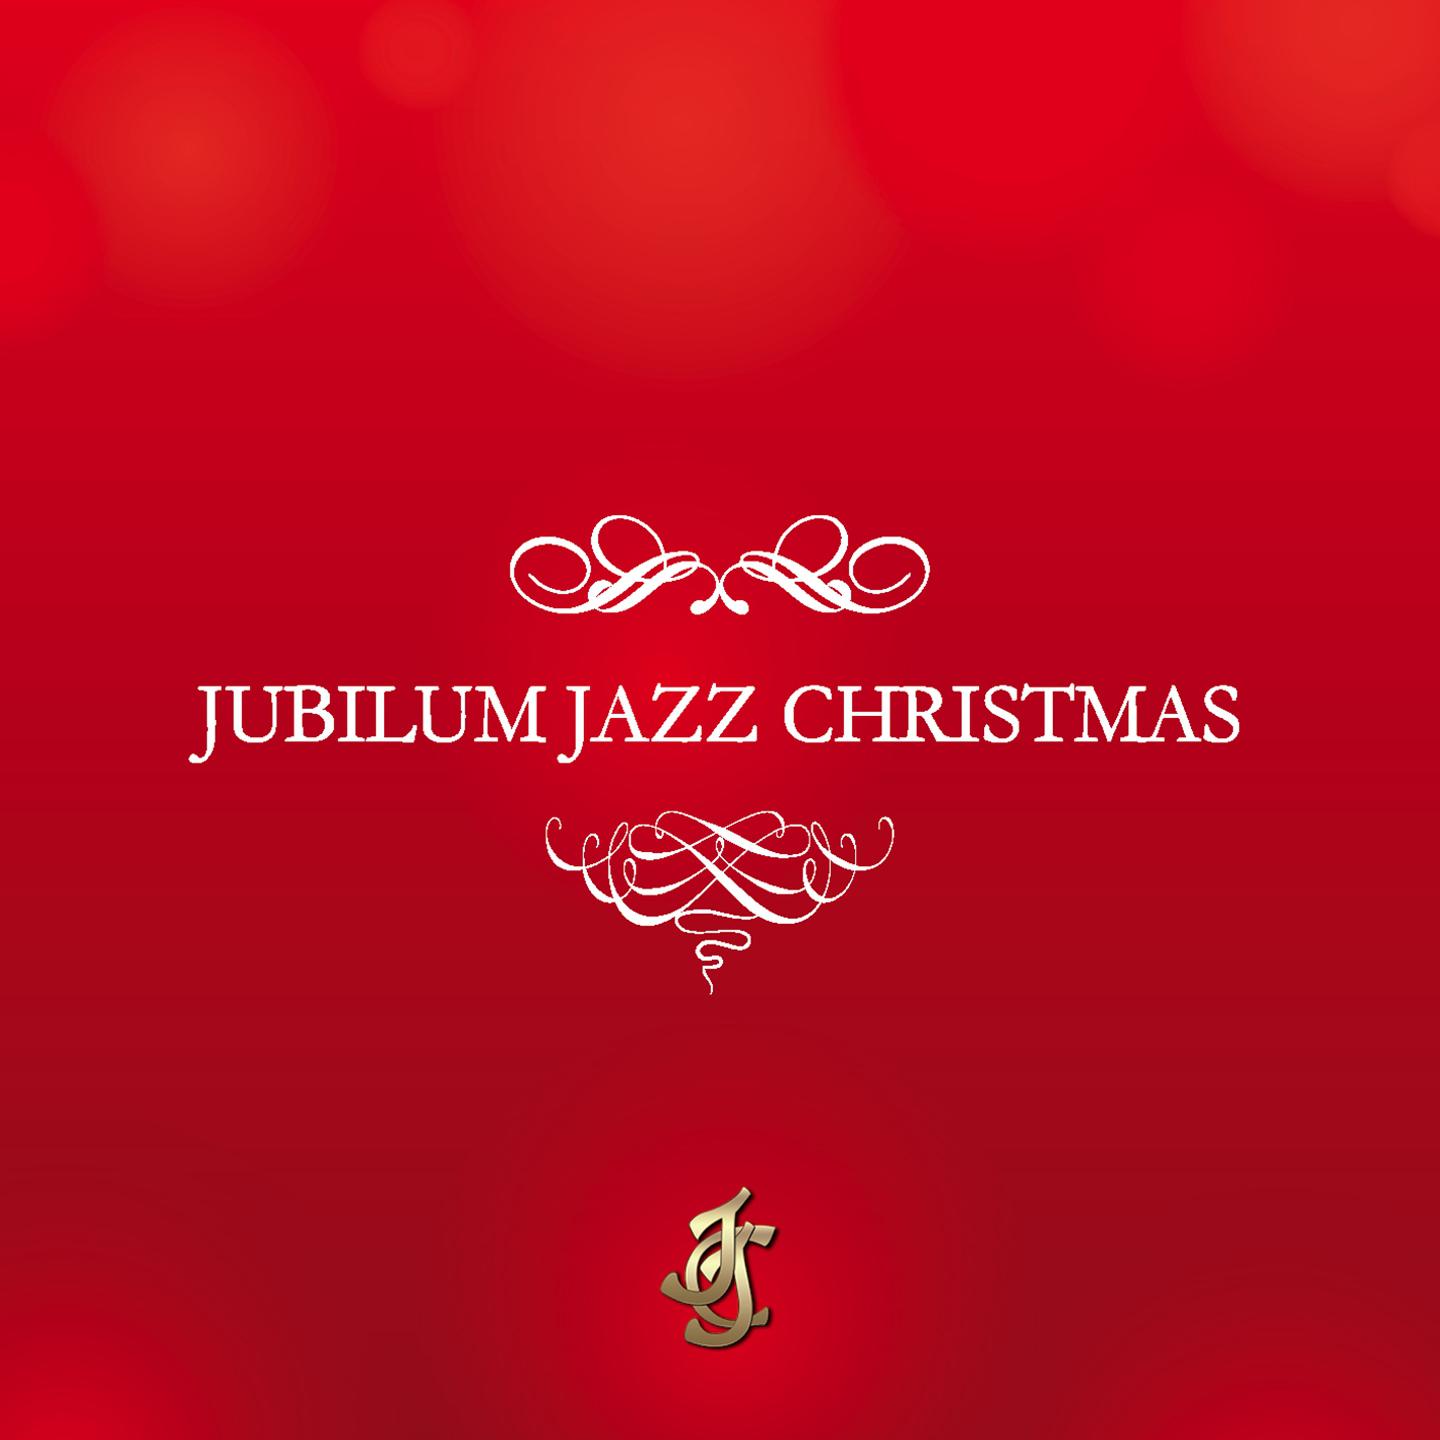 Jubilum Jazz Christmas